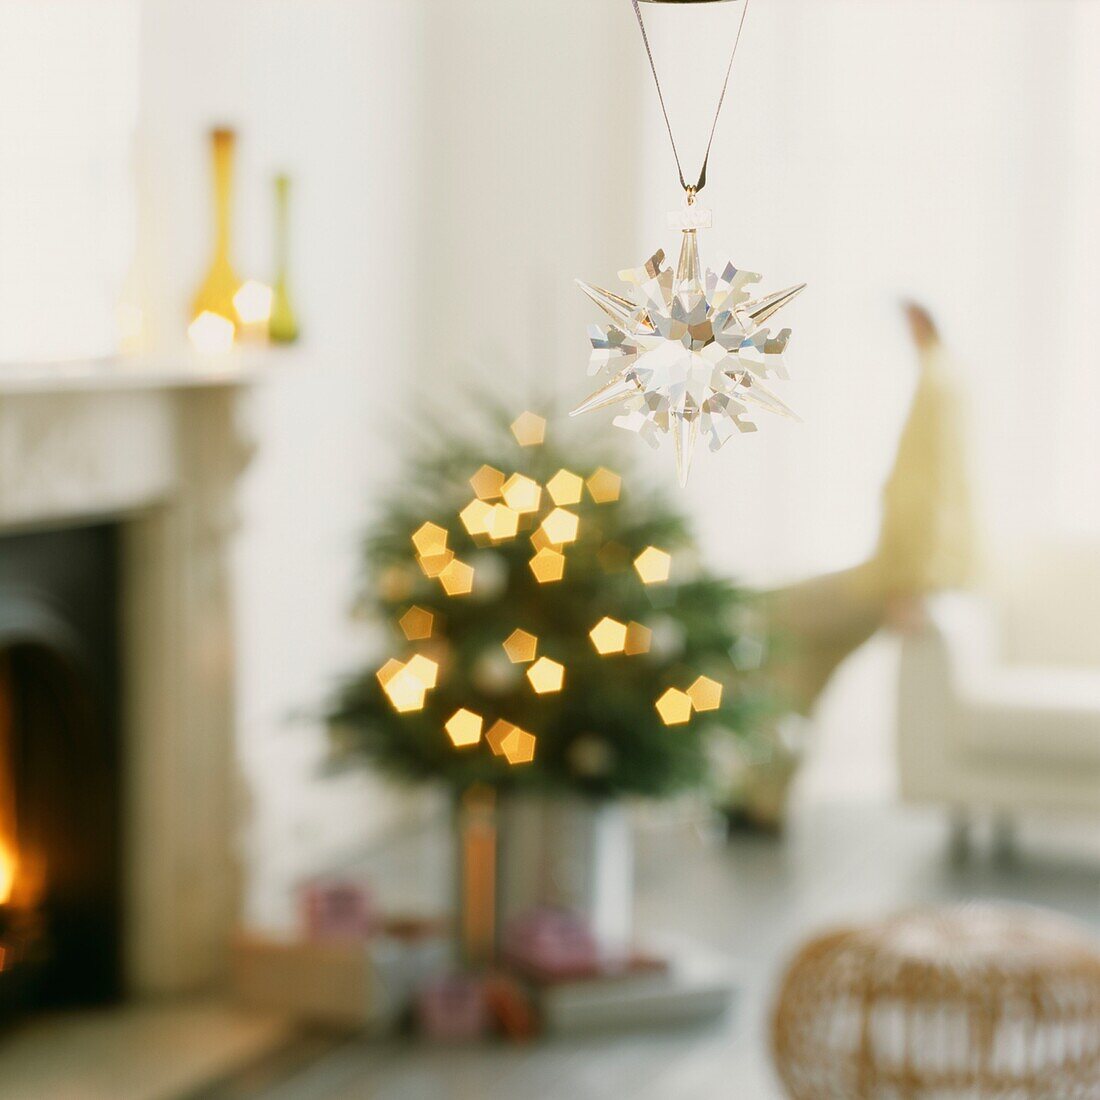 Weihnachtsschmuck aus Glas hängt in einem Zimmer mit Baum